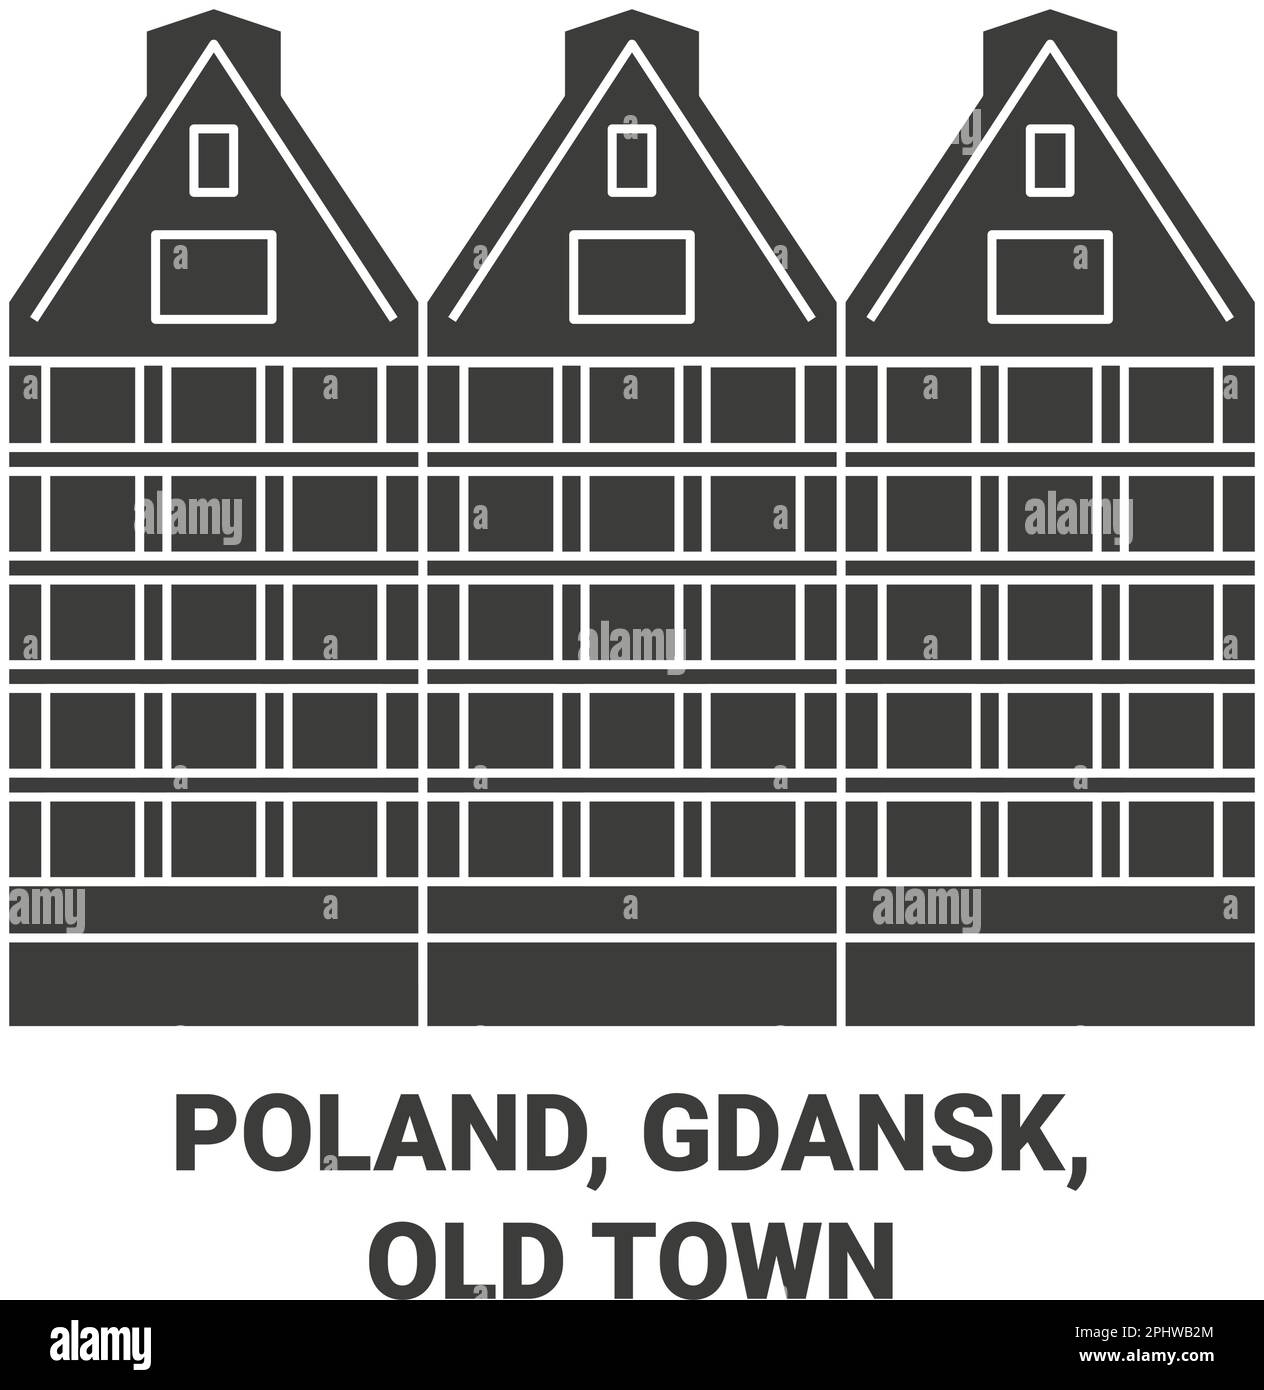 Poland, Gdansk, Old Town travel landmark vector illustration Stock Vector